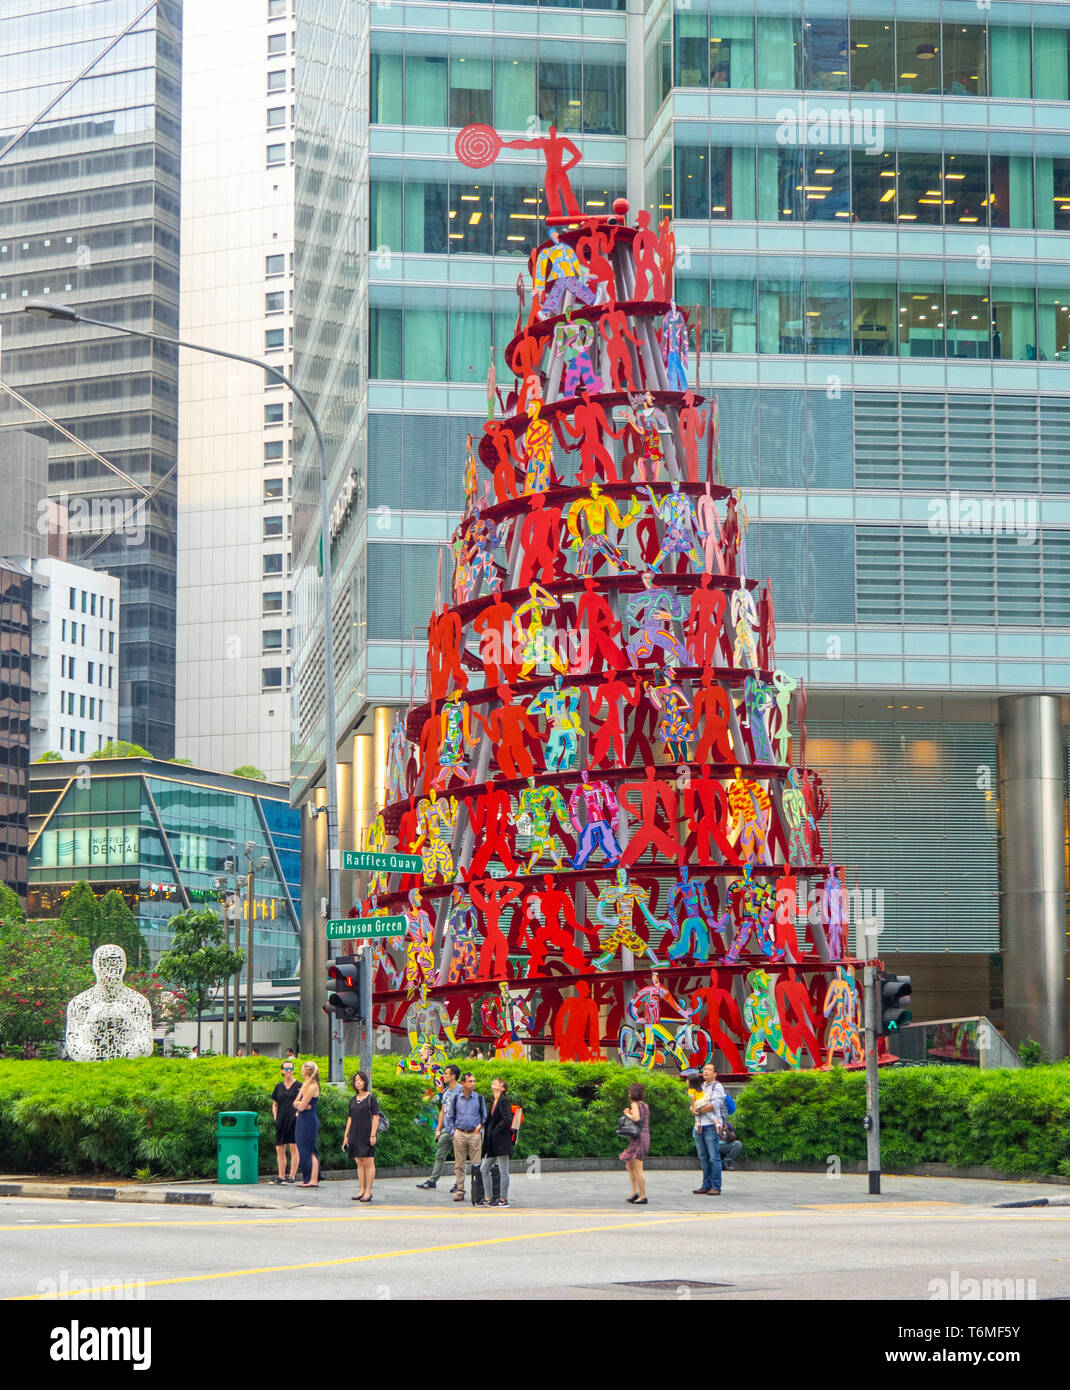 L'élan d'une spirale en acier inoxydable peint sculpture de figurines par sculpteur israélien David Gerstein sur Finlayson Green centre-ville de Singapour. Banque D'Images